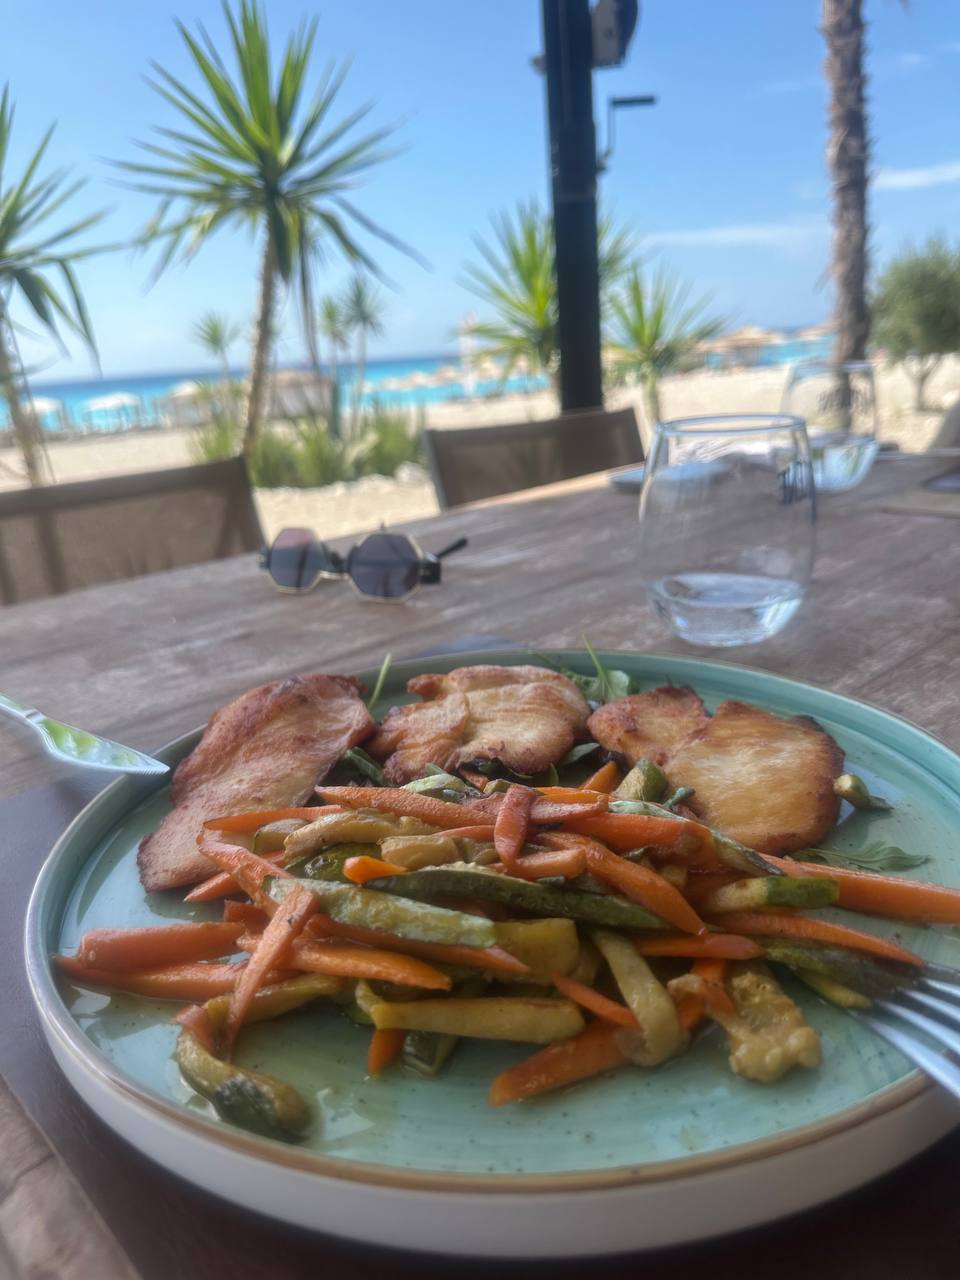 Тарелка с овощами на фоне моря и пляжа.